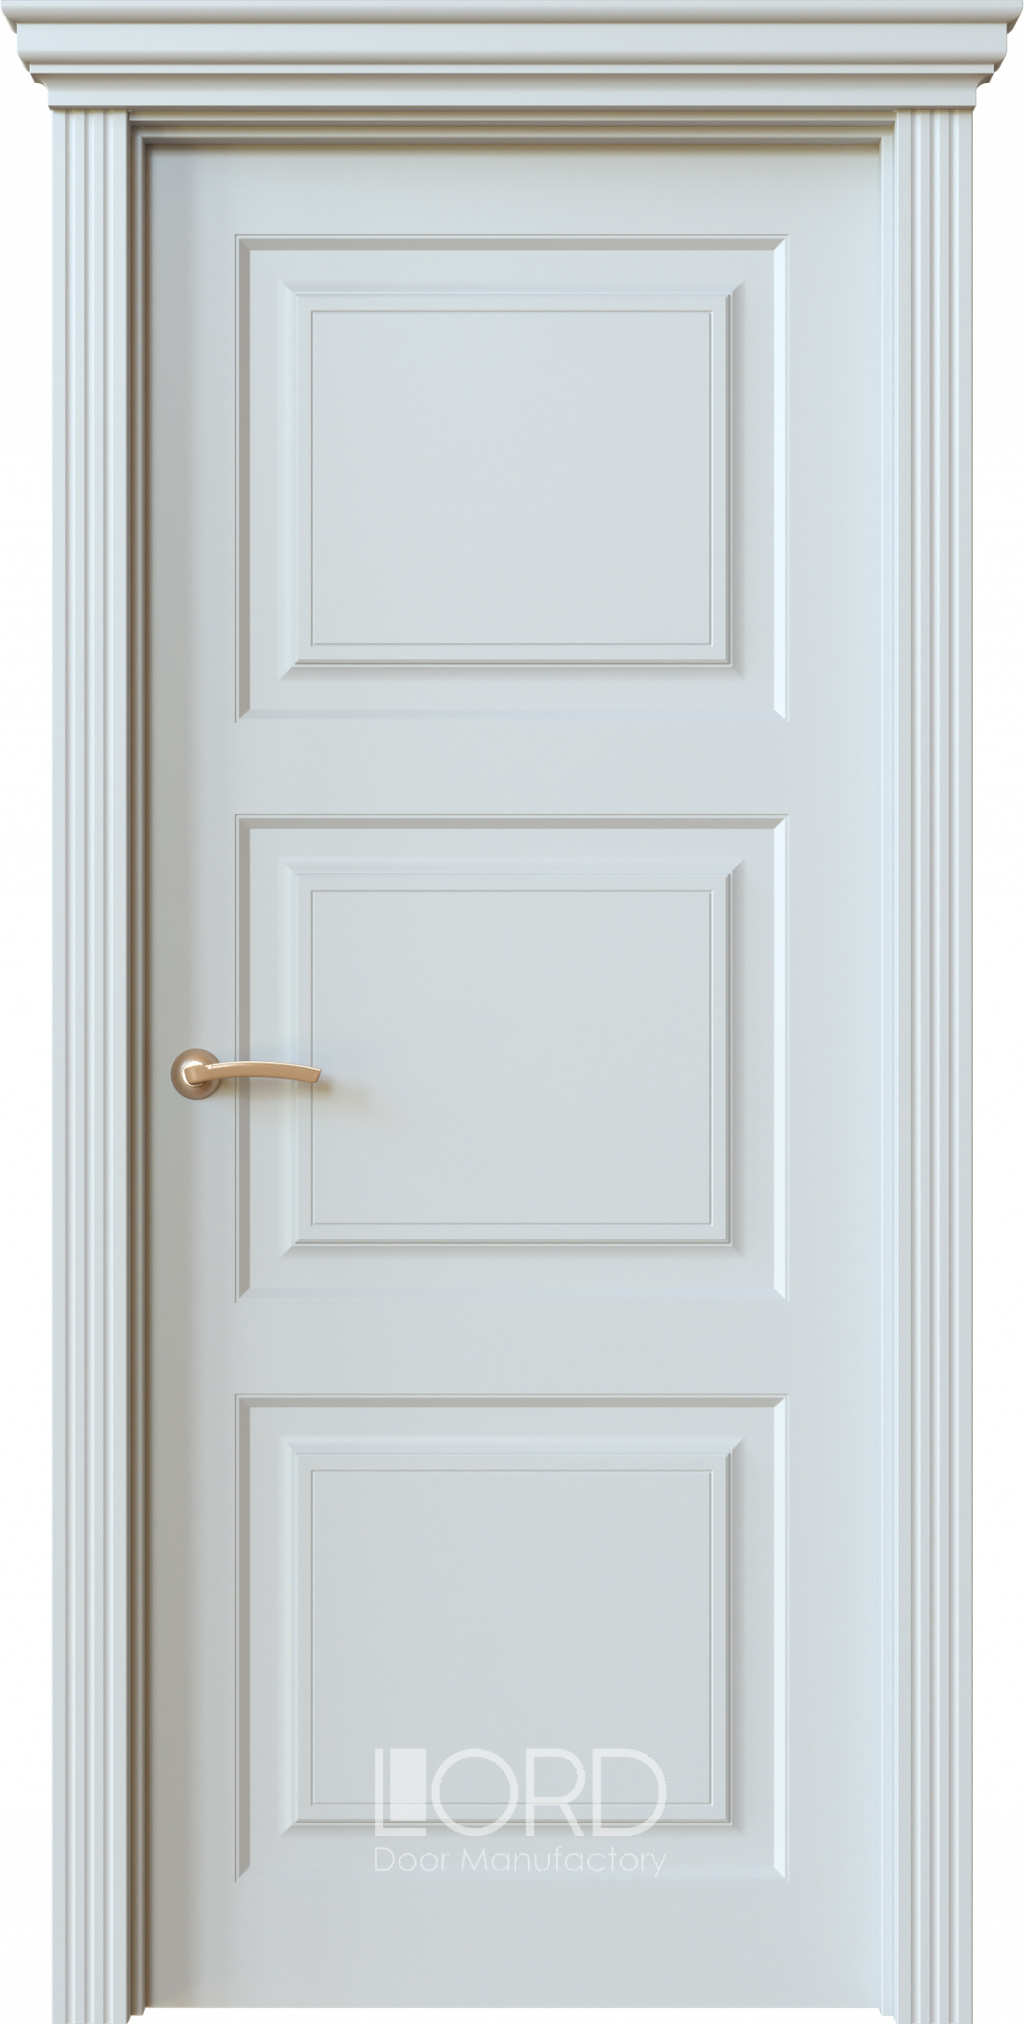 Лорд Межкомнатная дверь Dolce 5 ДГ, арт. 22454 - фото №1